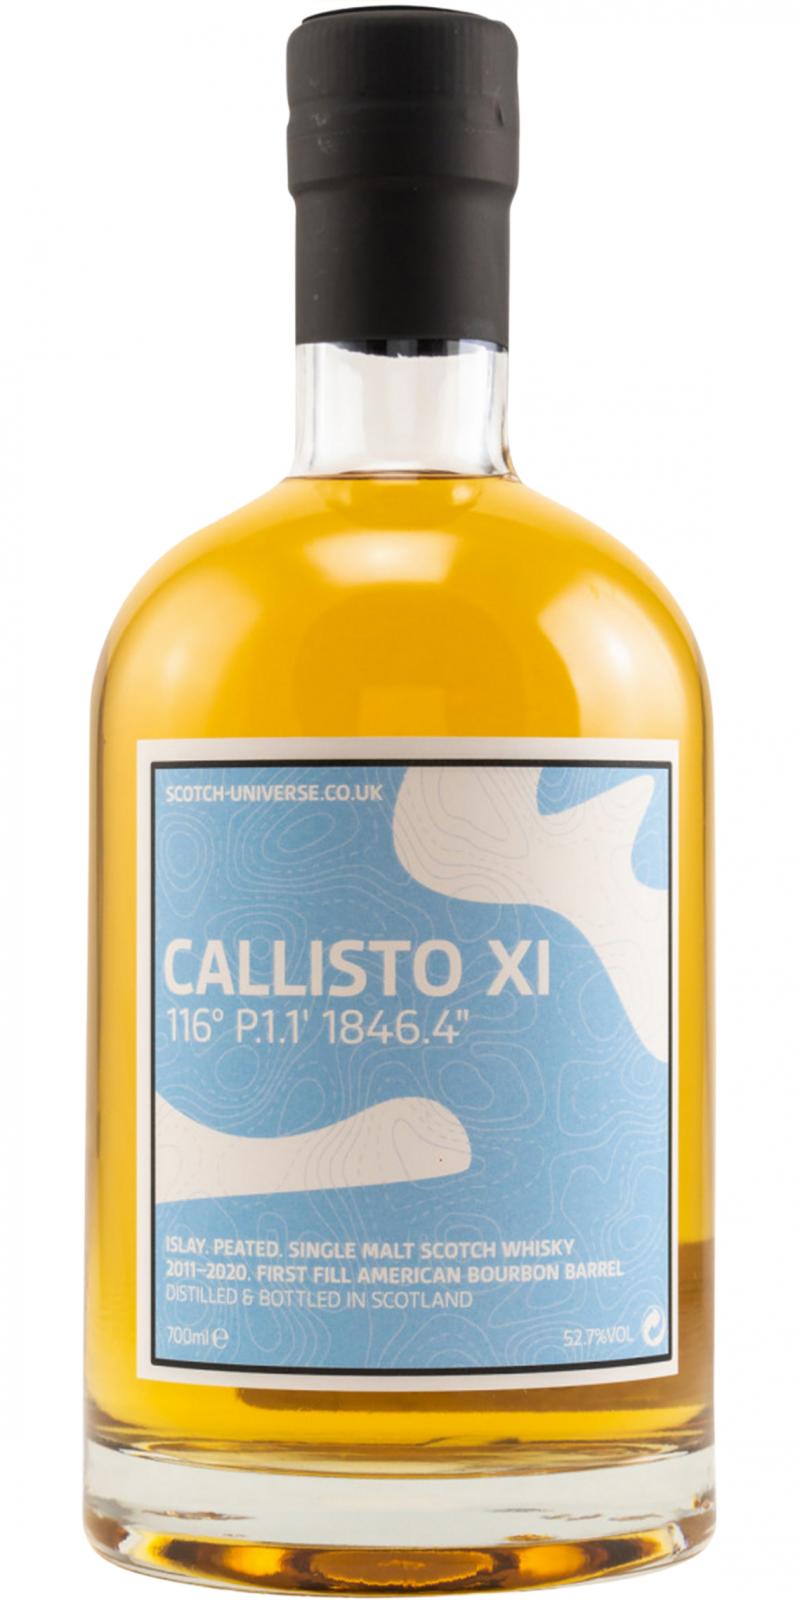 Scotch Universe Callisto XI - 116° P.1.1' 1846.4"